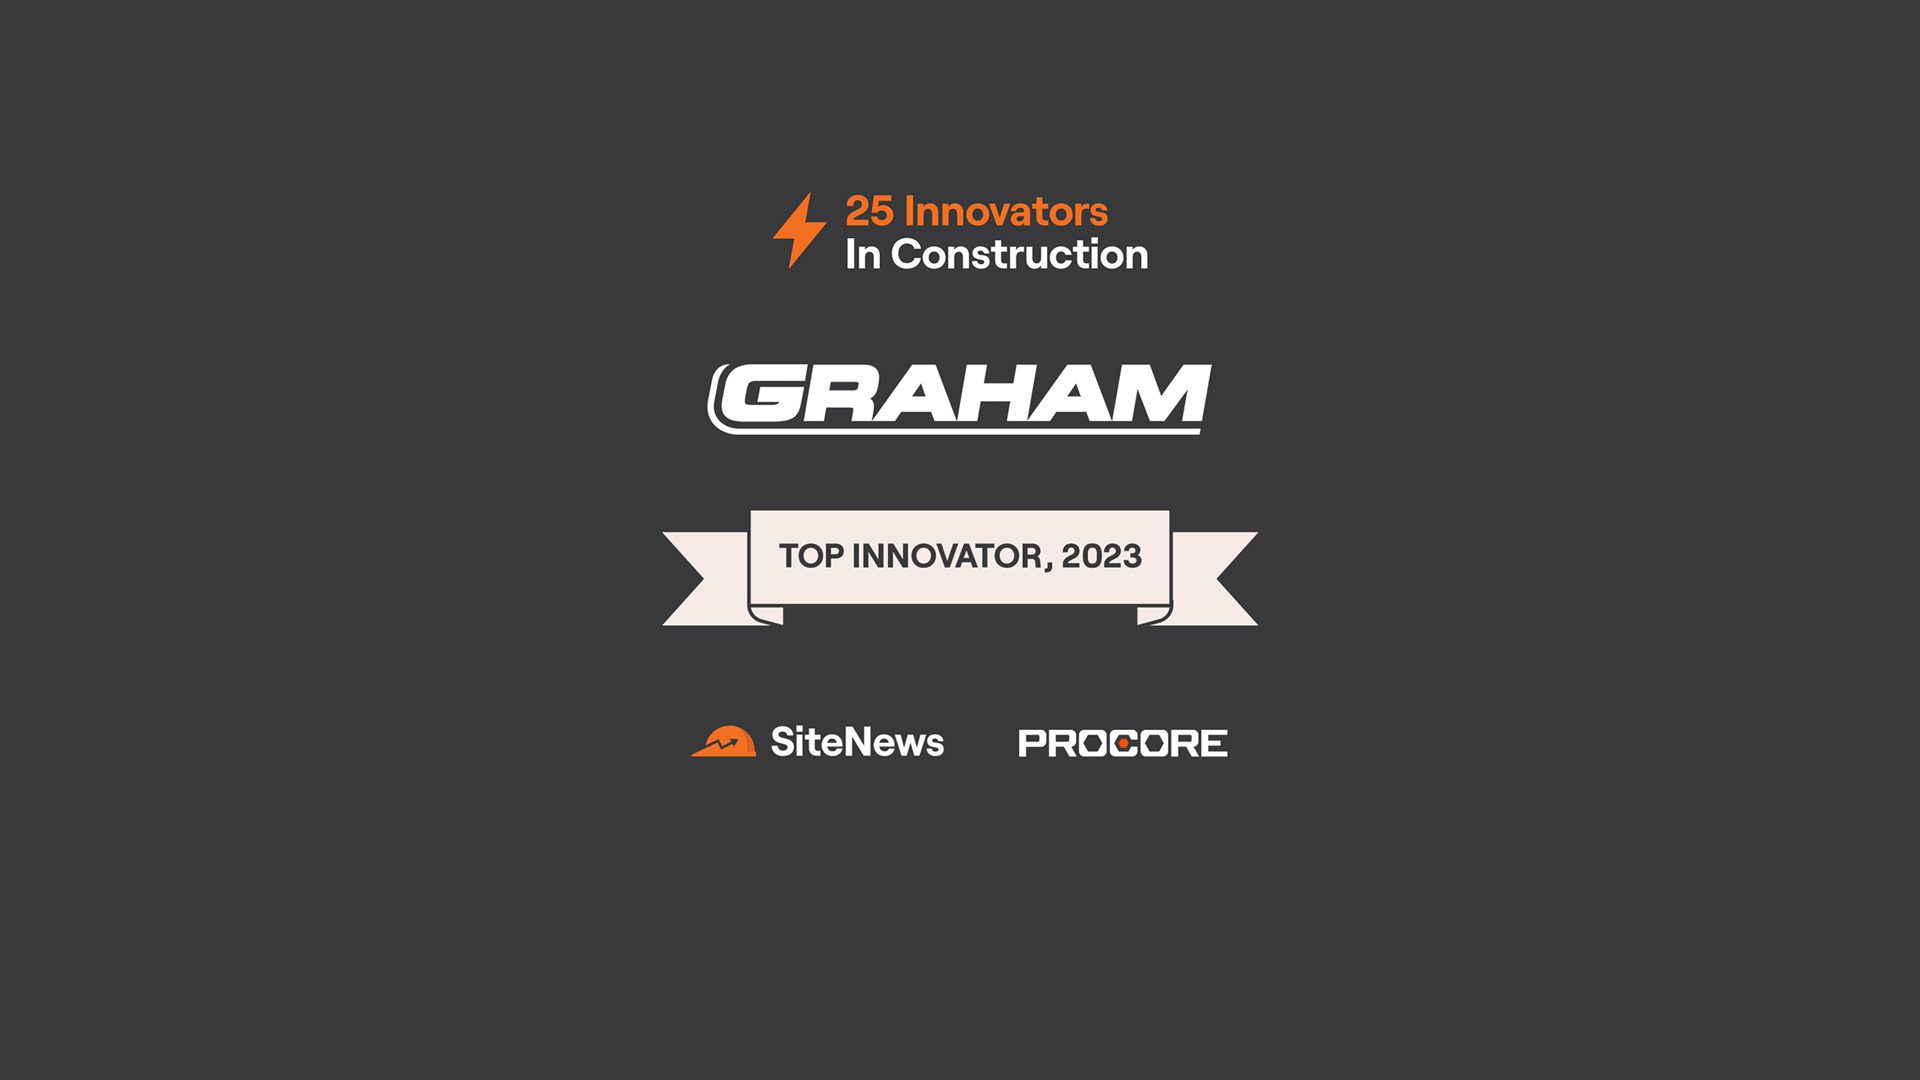 25-Innovators-in-Construction-Award-Graham-Construction